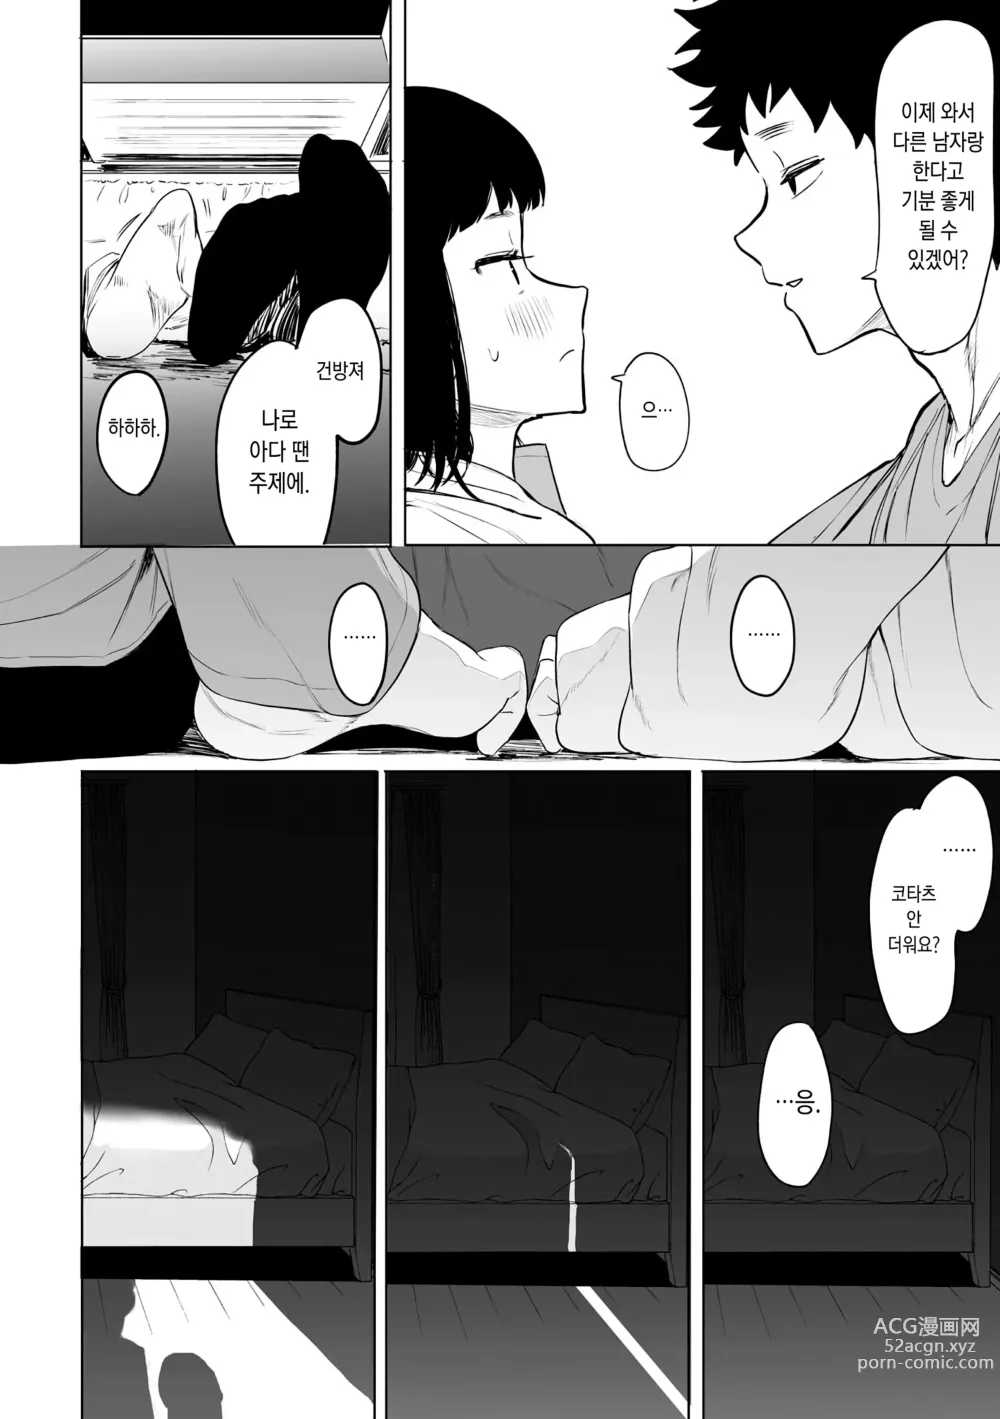 Page 207 of manga 에이트맨 선생님 덕분에 여친이 생겼습니다!